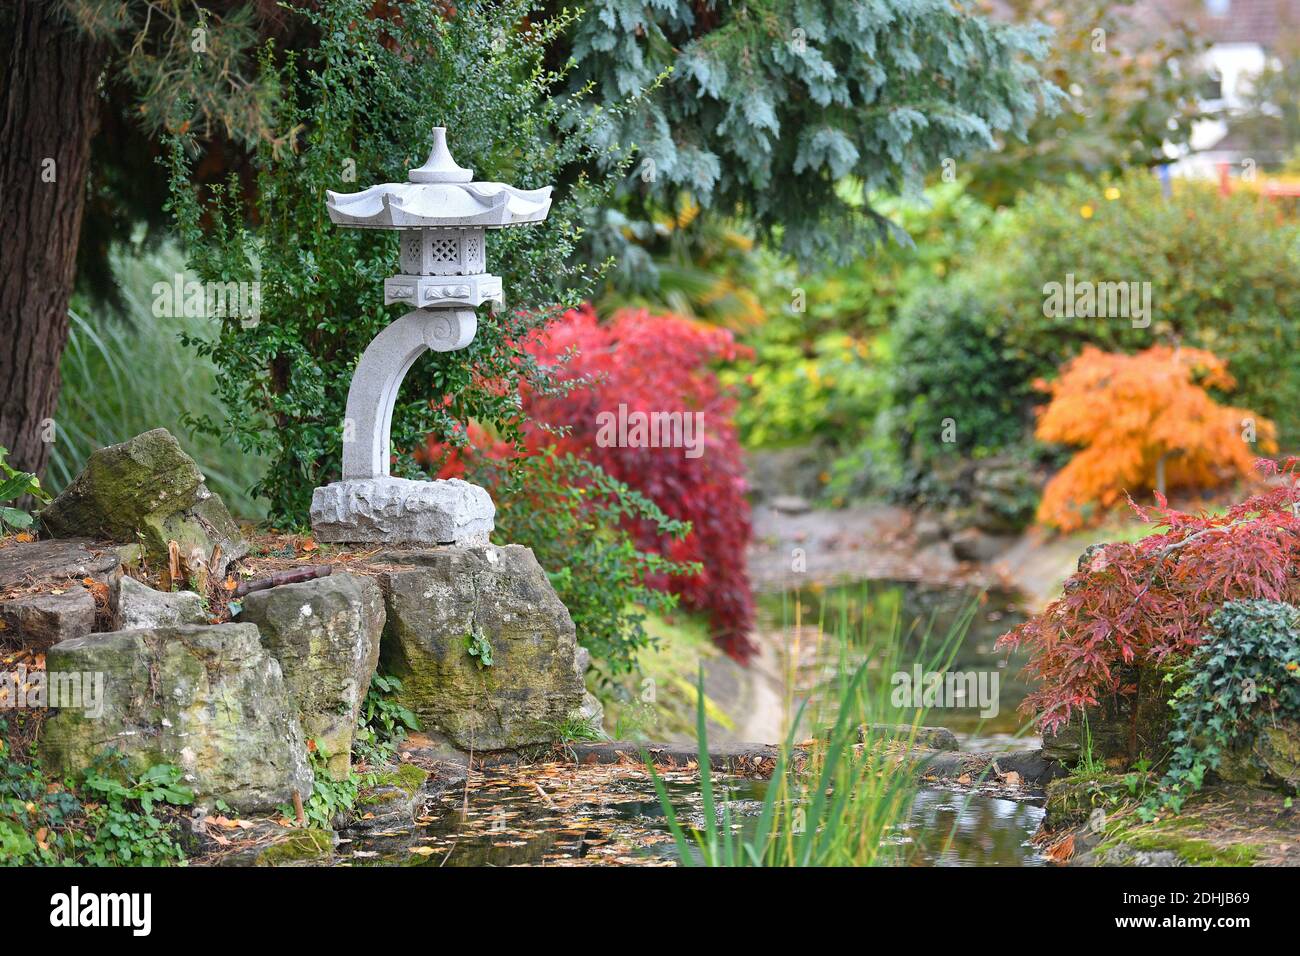 Feature on Stoke Park, Guildford - Herbstfarben, wie die Arbeiten zur Wiederherstellung und Verbesserung der orientalischen Gärten fortgesetzt. Guildford, Surrey. Bild aufgenommen am 20. Oktober 2020 Stockfoto